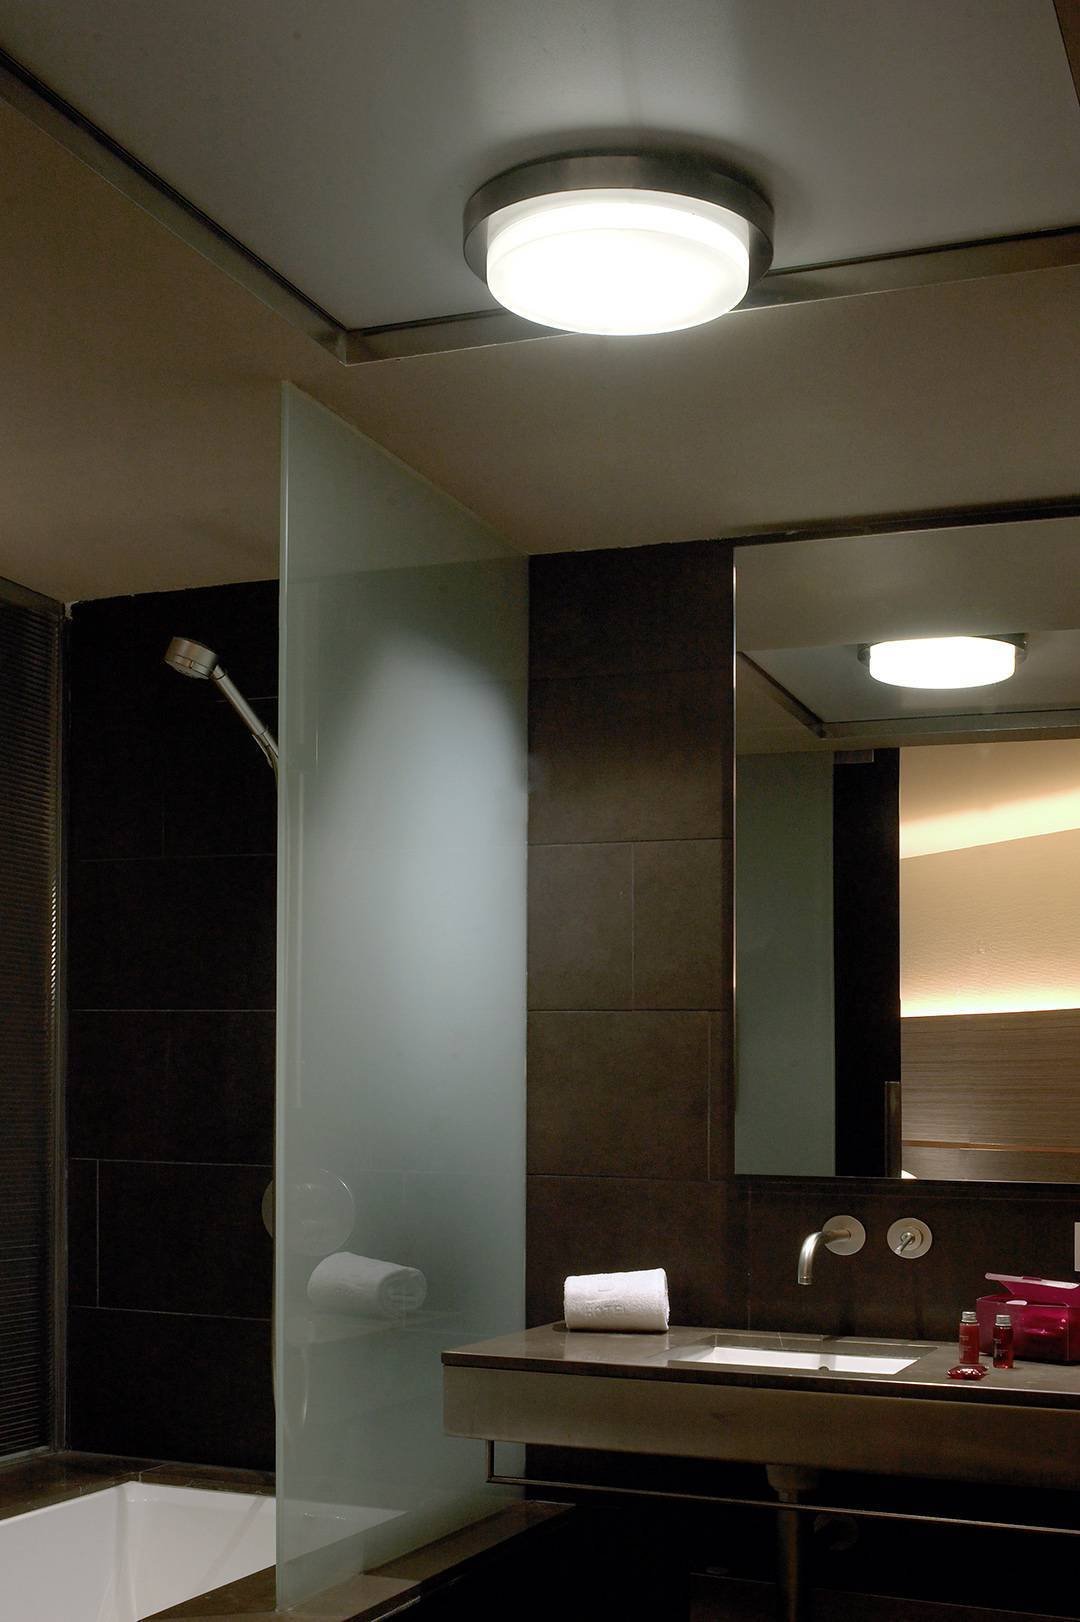 Светодиодные светильники для ванной комнаты. Светильники для ванной комнаты. Светильники в ванную комнату на потолок. Освещение в ванной. Встроенные светильники для ванной.